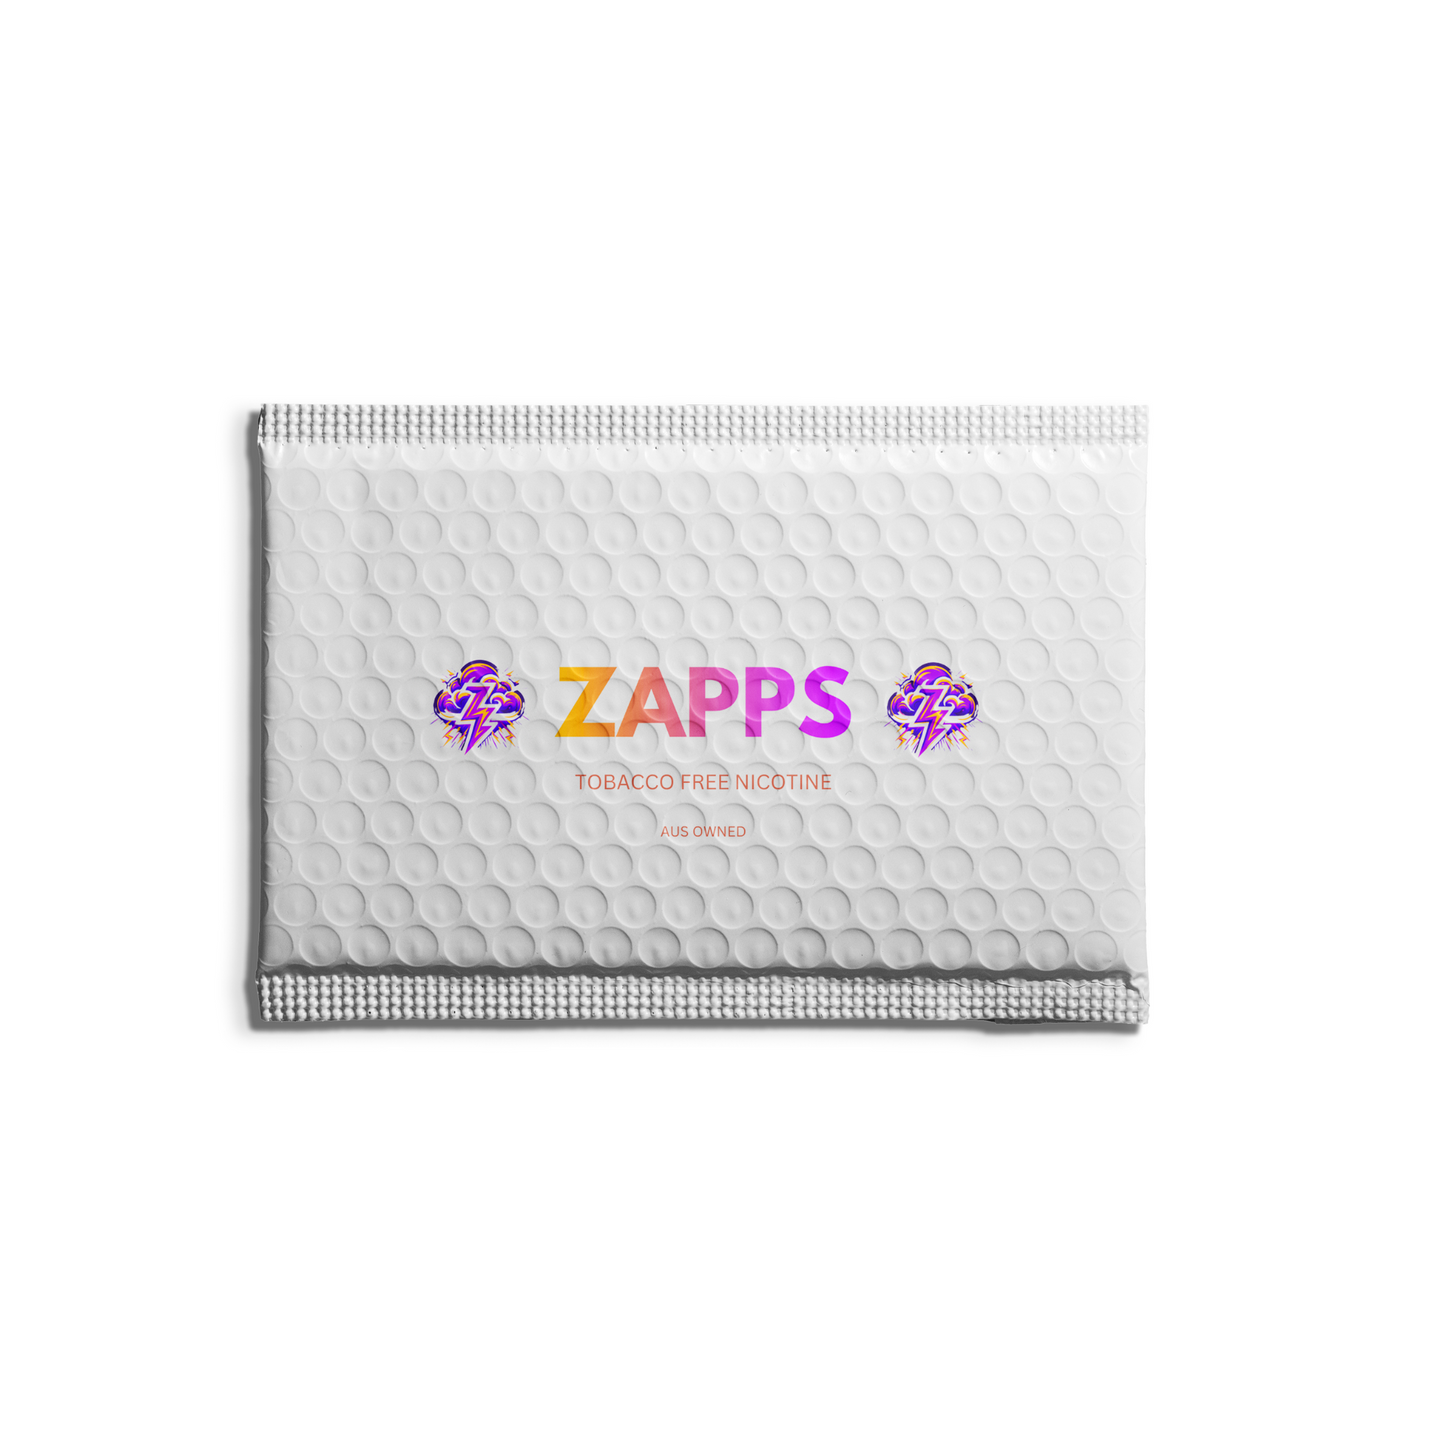 ZAPP - Energy Drink (4mg)